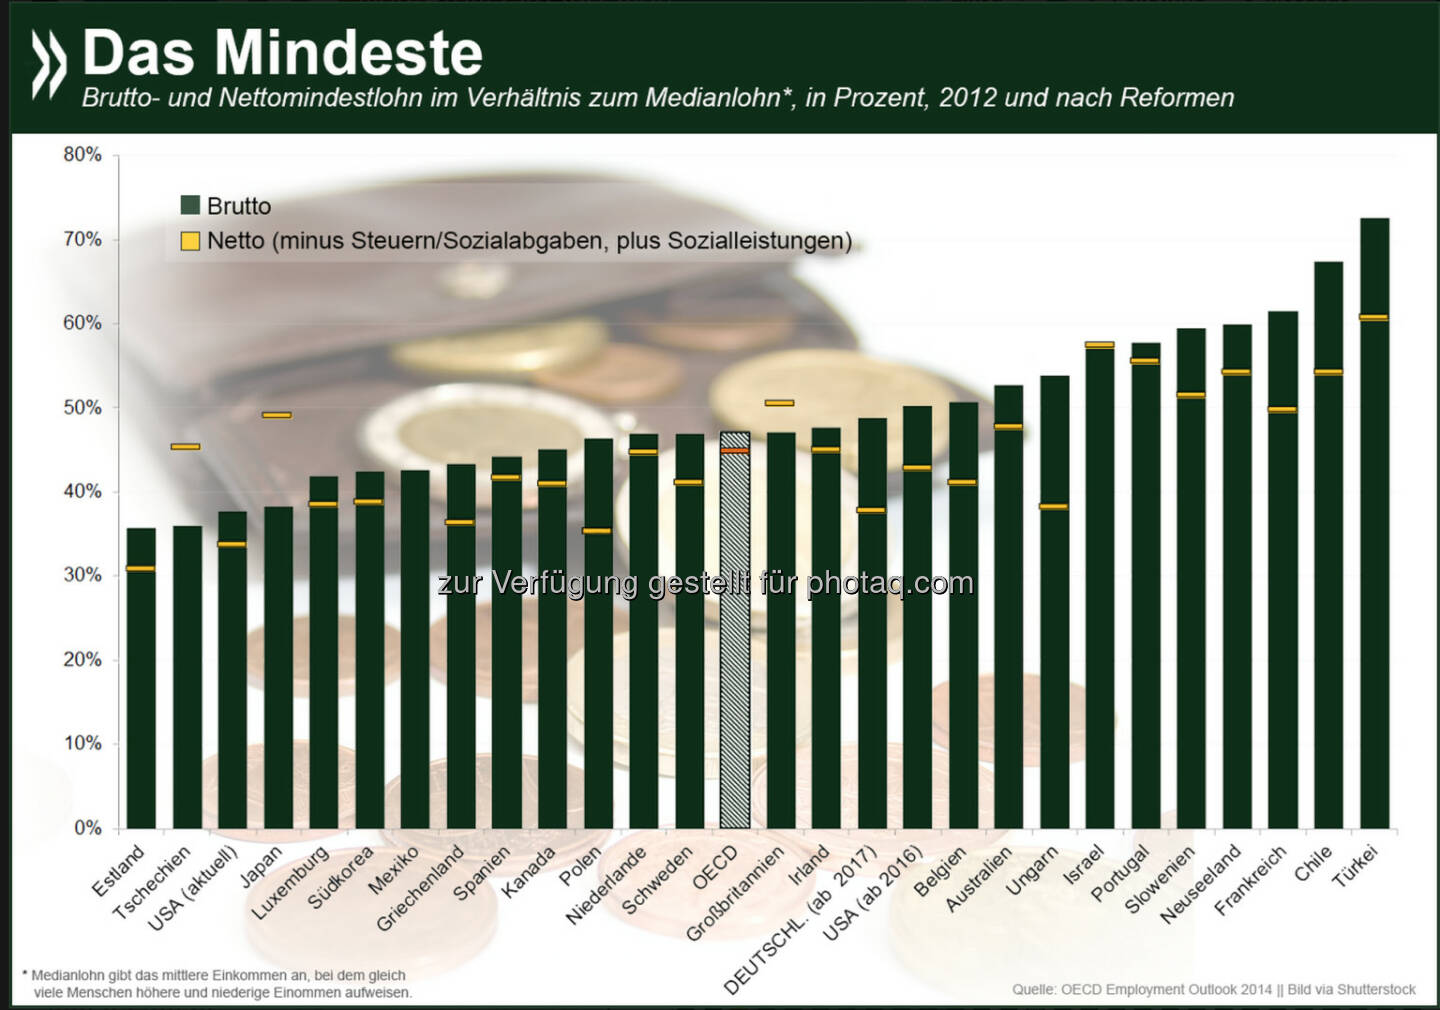 Das ist das Mindeste: In vielen OECD-Ländern mit Mindestlohn liegt dieser zwischen 35 und 75 % des Medianlohns im jeweiligen Land. Wie gut man davon leben kann, wird nicht zuletzt durch Steuern und Sozialleistungen beeinflusst. Deutschland liegt brutto zwar im OECD-Schnitt, netto aber am unteren Ende.

Mehr Informationen zum Thema: http://bit.ly/1v8bQYF (S.67f.)